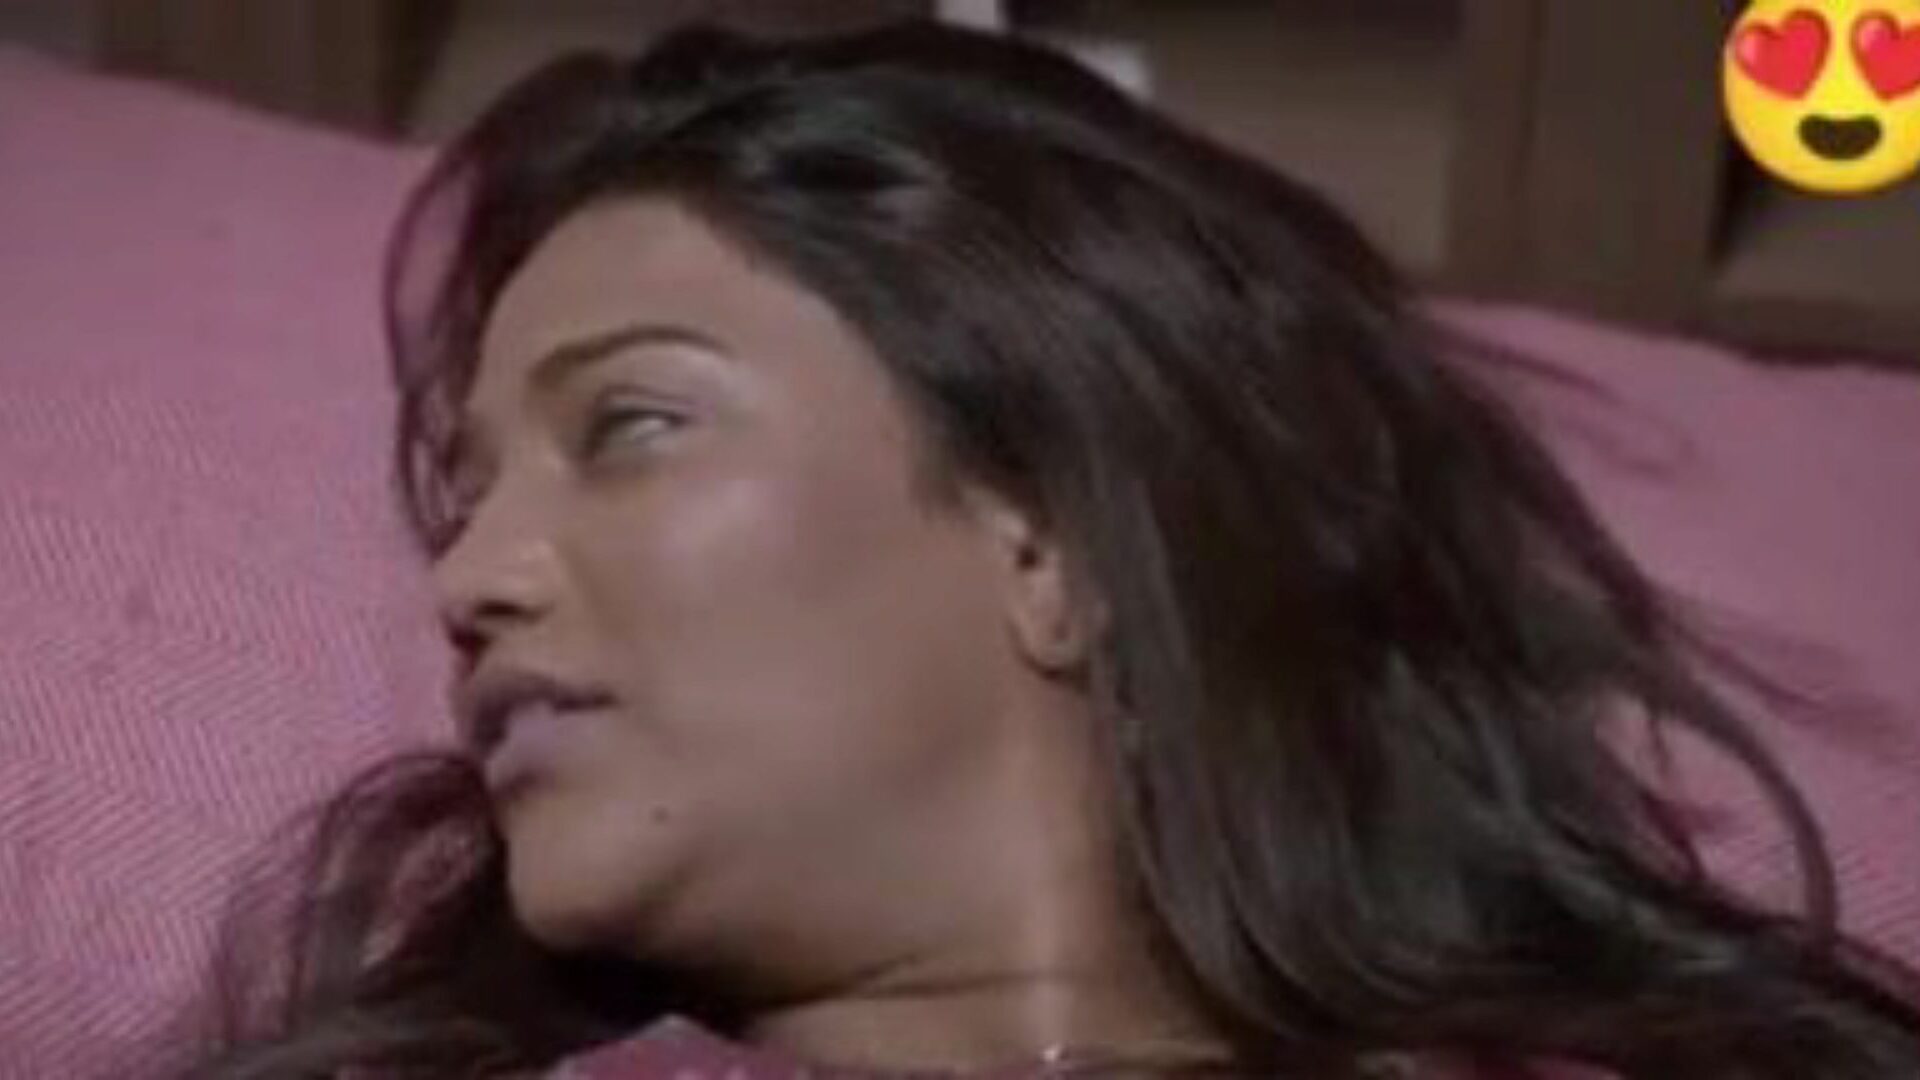 dubbel dhamaka saree sex, gratis indisk porr da: xhamster titta på dubbel dhamaka saree sexfilm på xhamster, den massiva samlag röret web resurs med massor av gratis för alla indiska nya sex xxx & hindi pornografi film scener